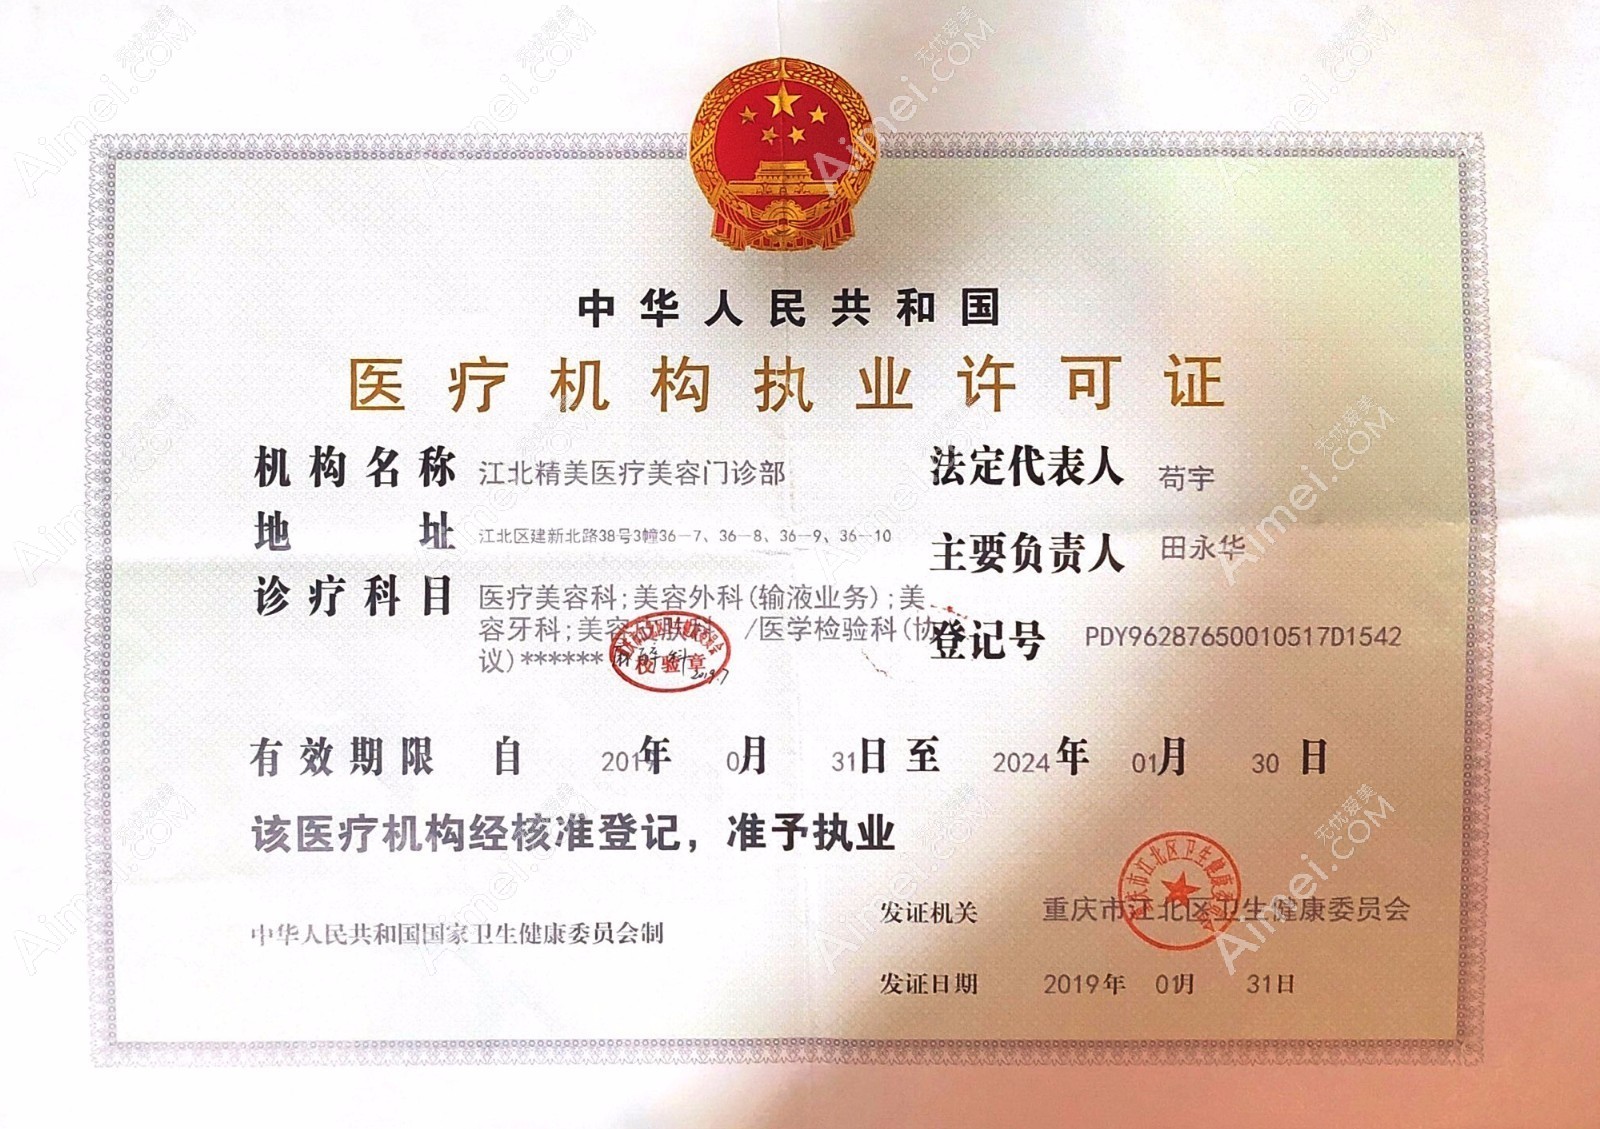 重庆精美医疗美容门诊部医疗机构执业许可证